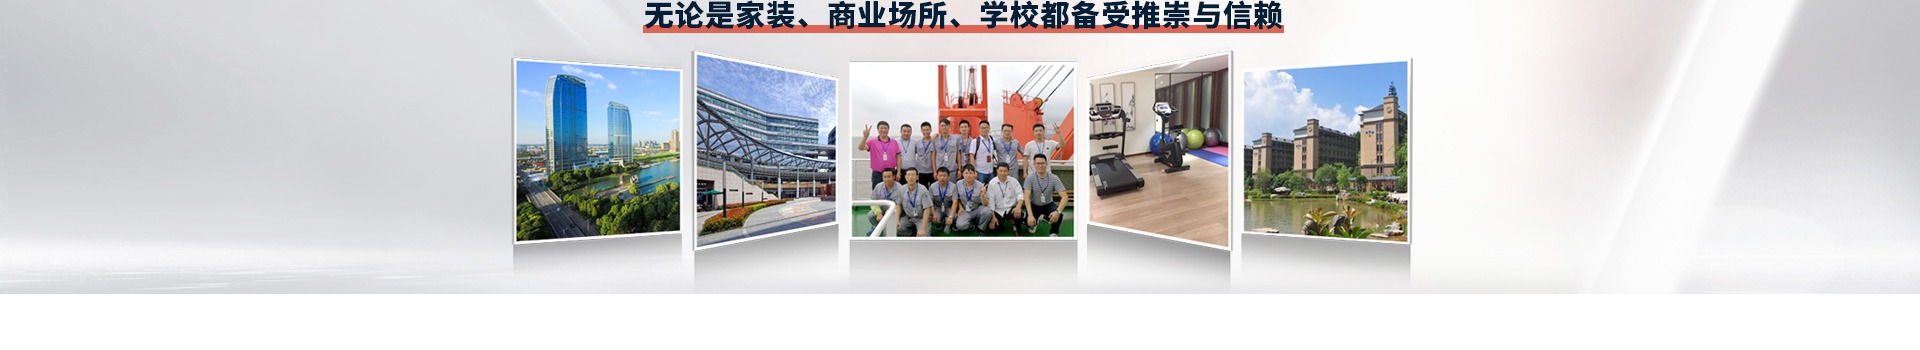 上海石墨烯地暖-电热地板-电地暖品牌-石墨烯地板-发热地板